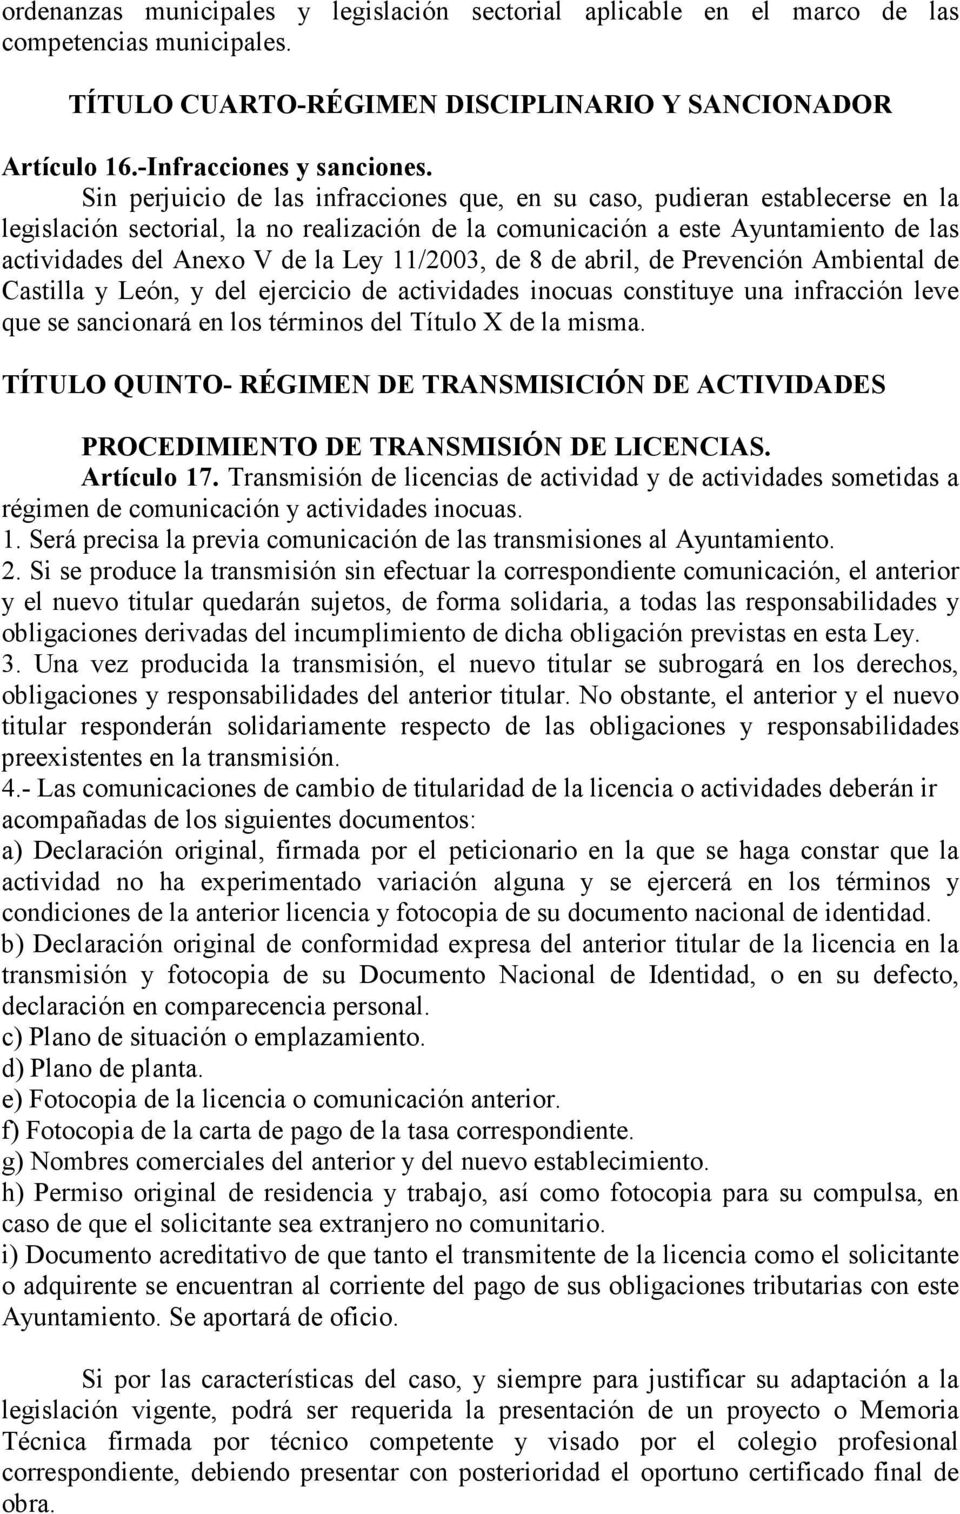 11/2003, de 8 de abril, de Prevención Ambiental de Castilla y León, y del ejercicio de actividades inocuas constituye una infracción leve que se sancionará en los términos del Título X de la misma.